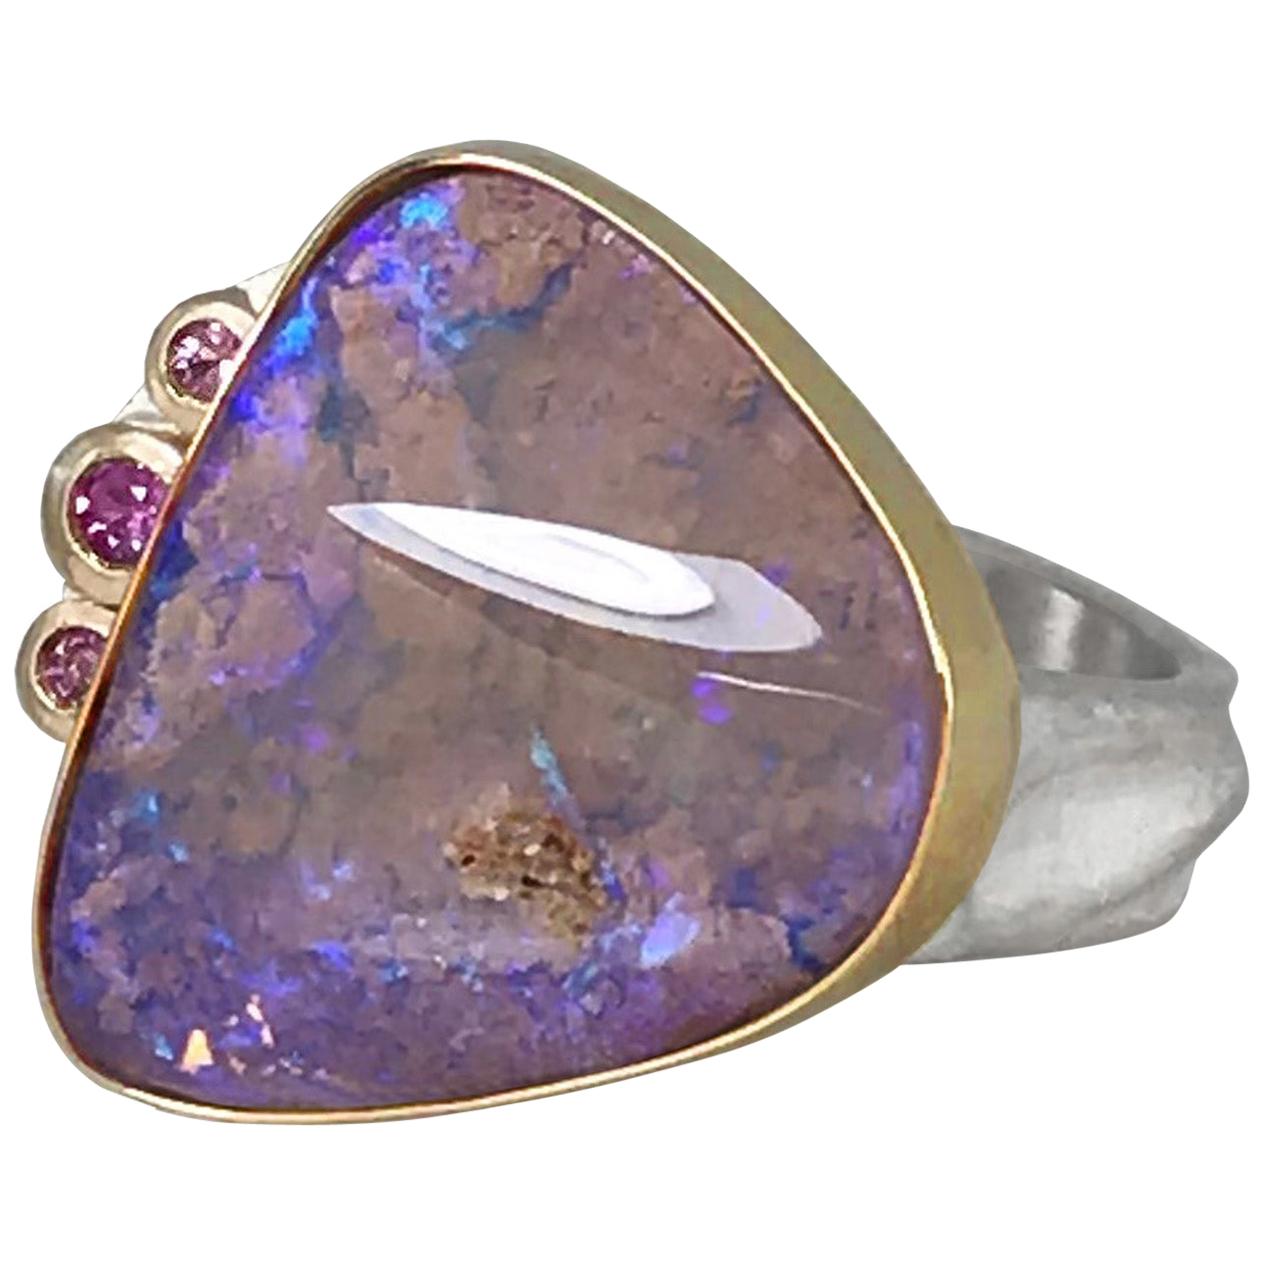 K.Mita Coloradas Ring, Pink Boulder Opal, Pink Sapphires, 18 Karat Gold, Silver